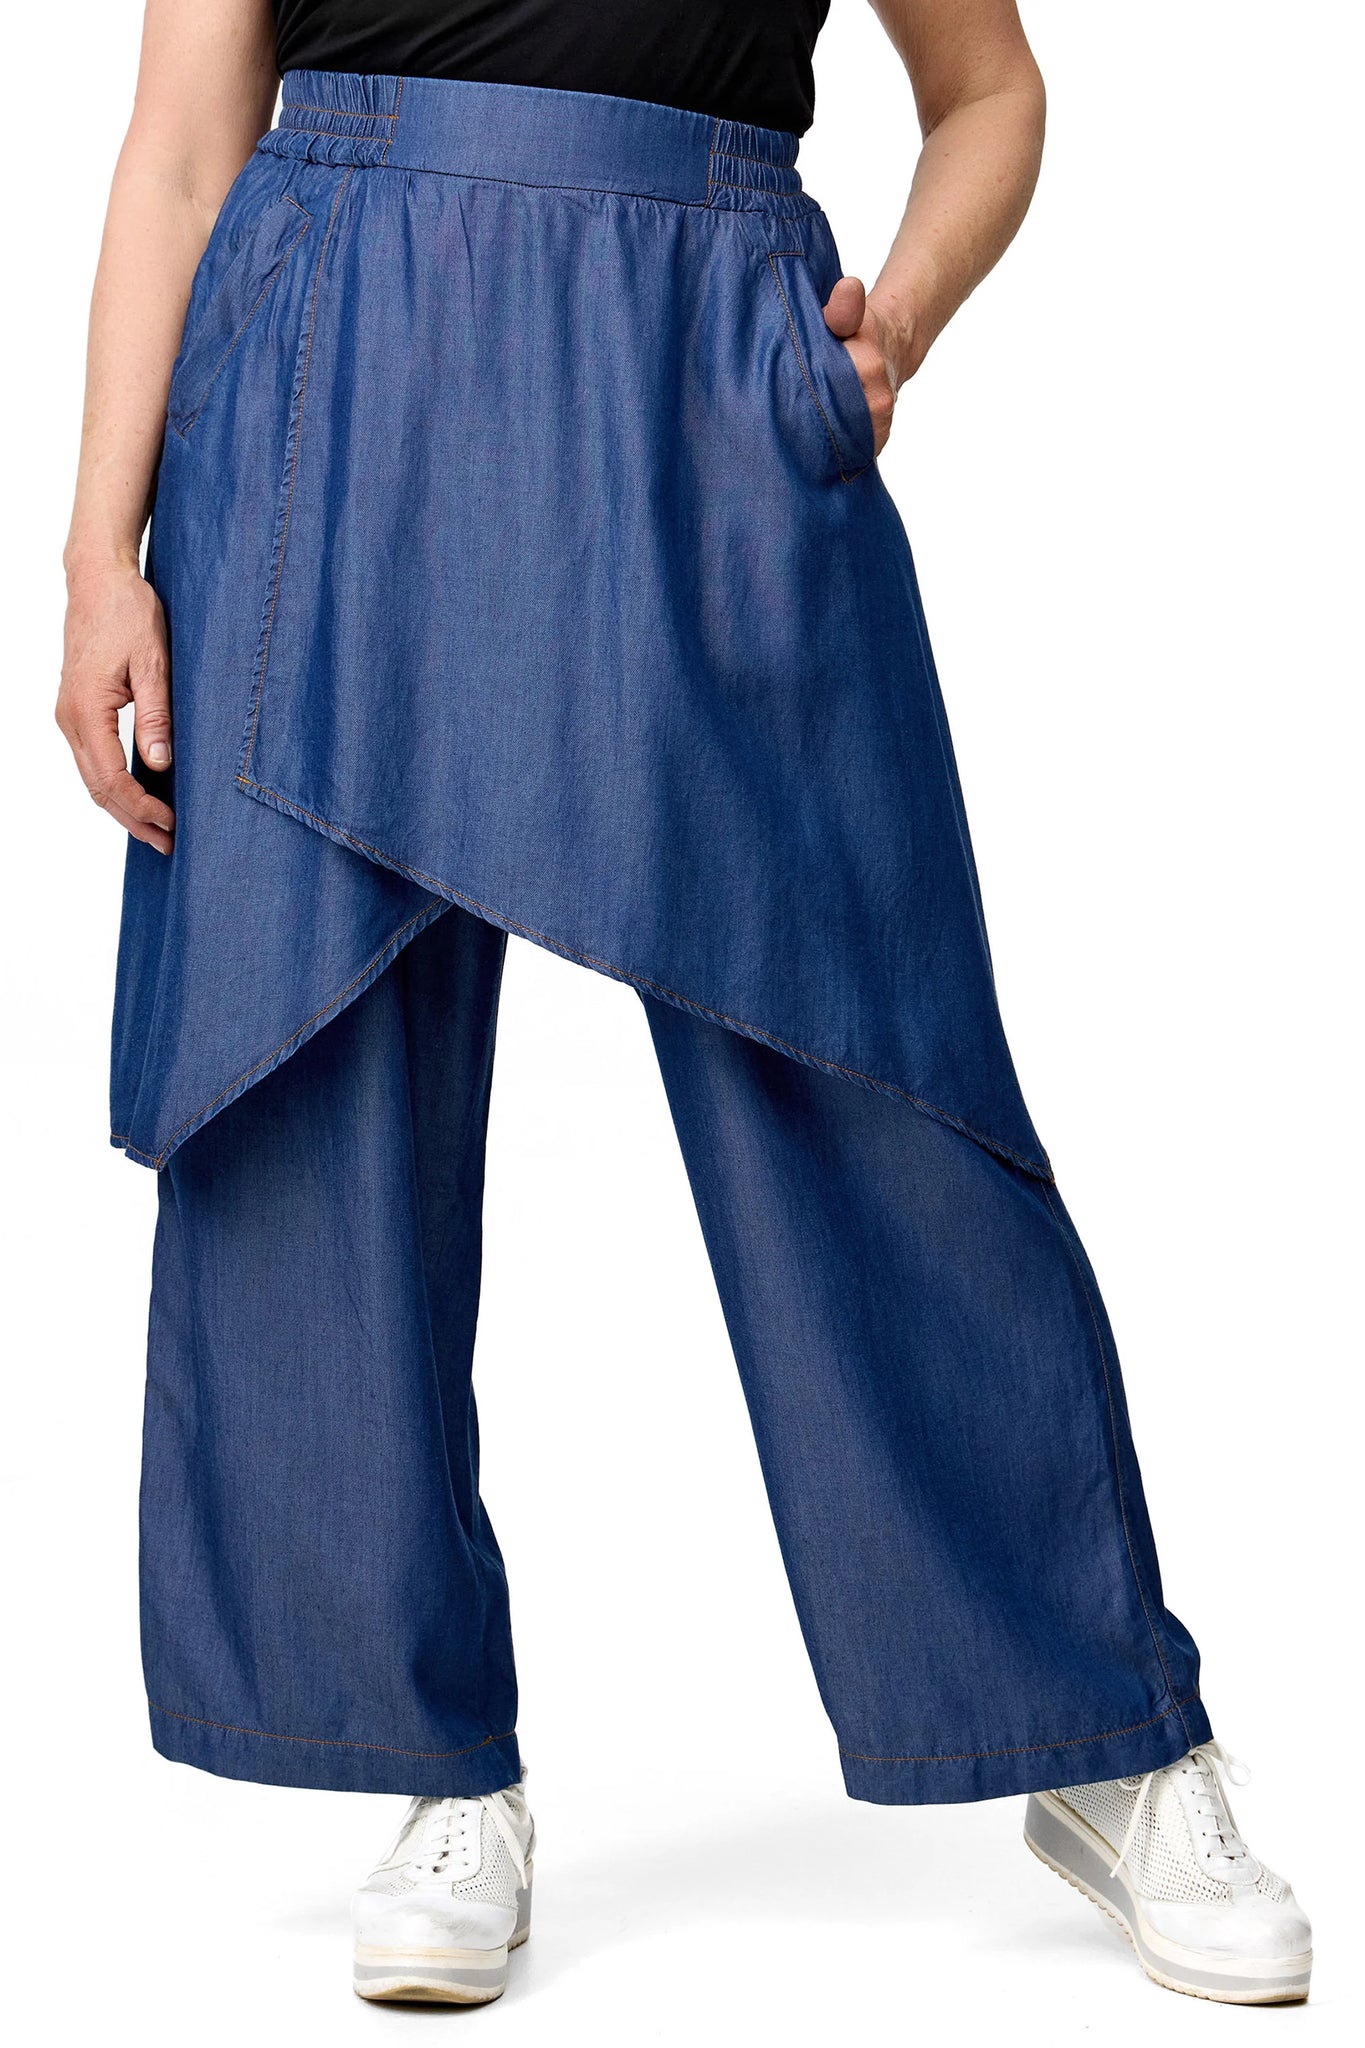 Hose von Do Your Best aus Tencel in gerader Form, D62201, Jeansblau, Ausgefallen, Modern